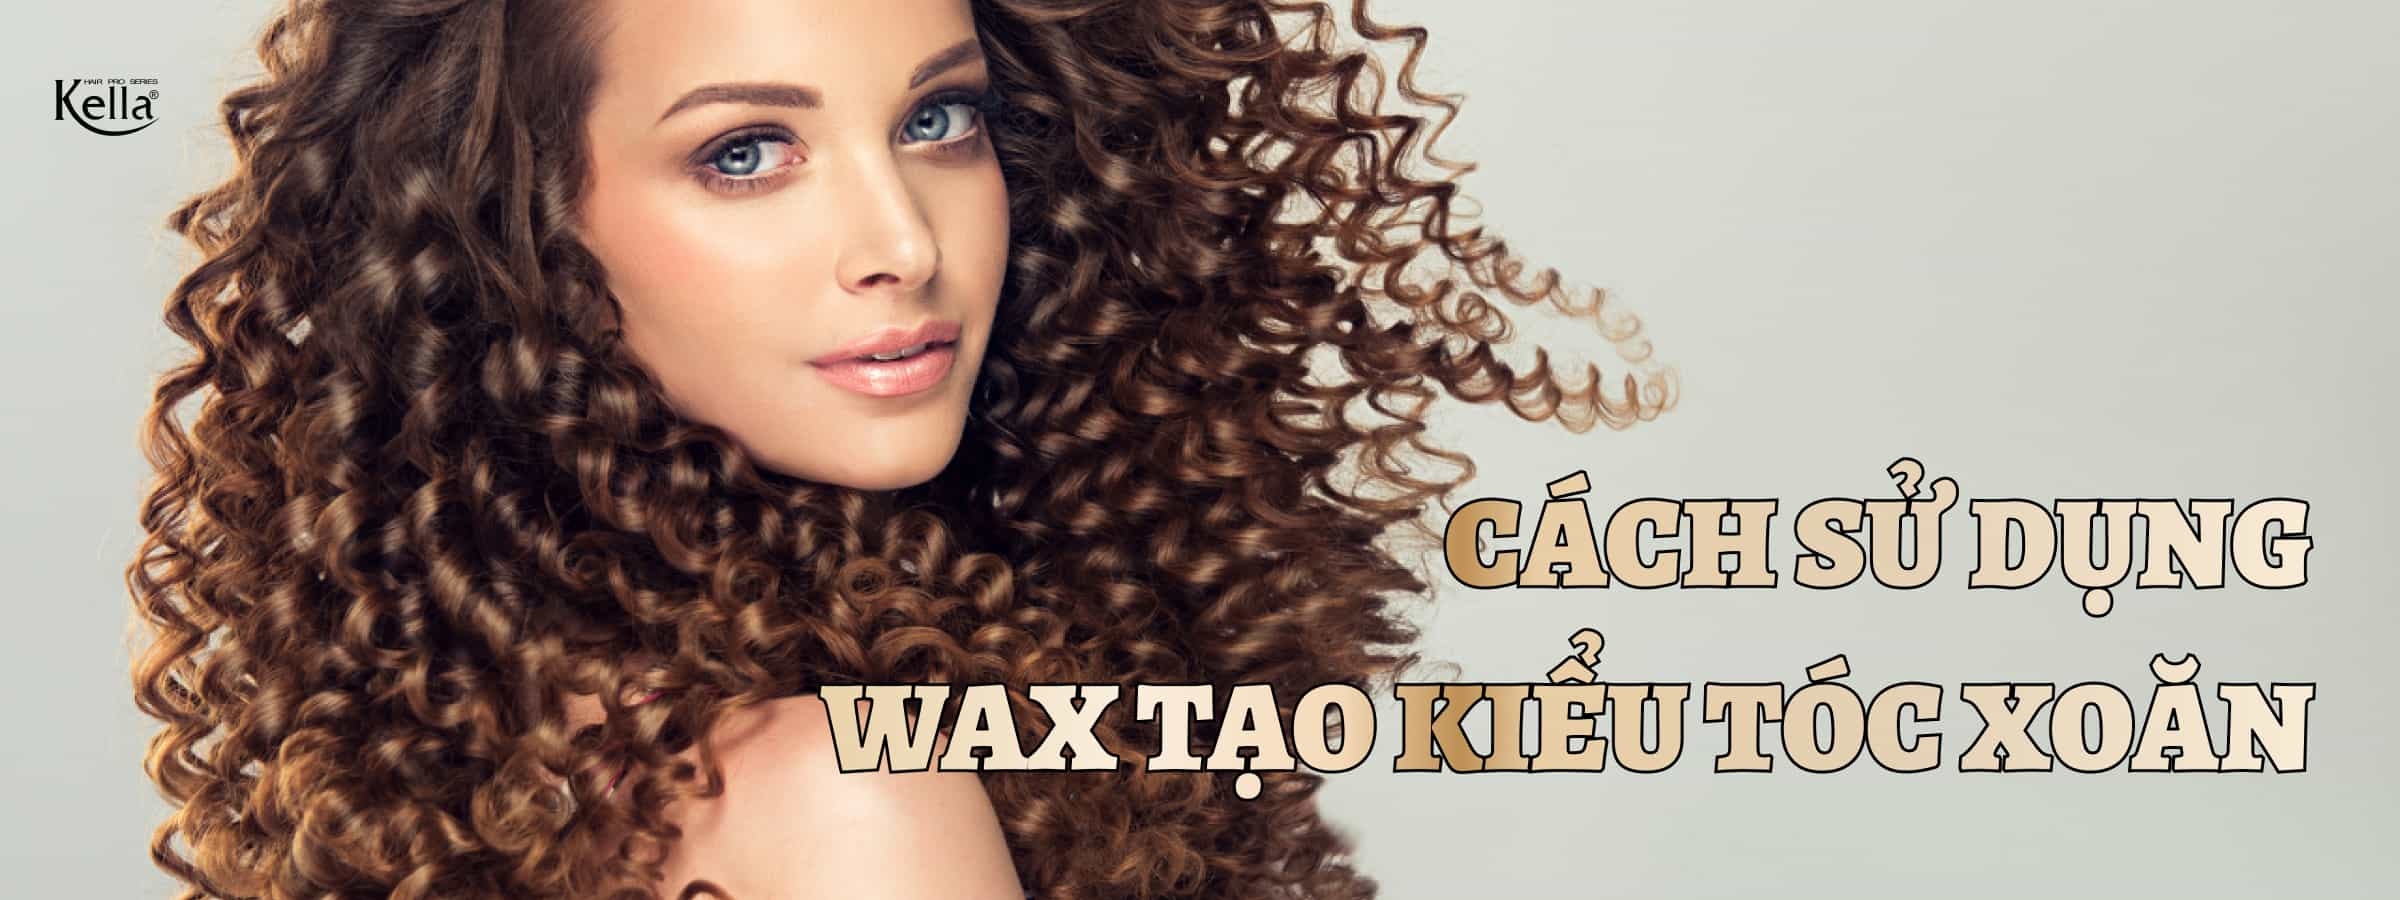 Hướng dẫn cách sử dụng Wax tạo kiểu tóc xoăn